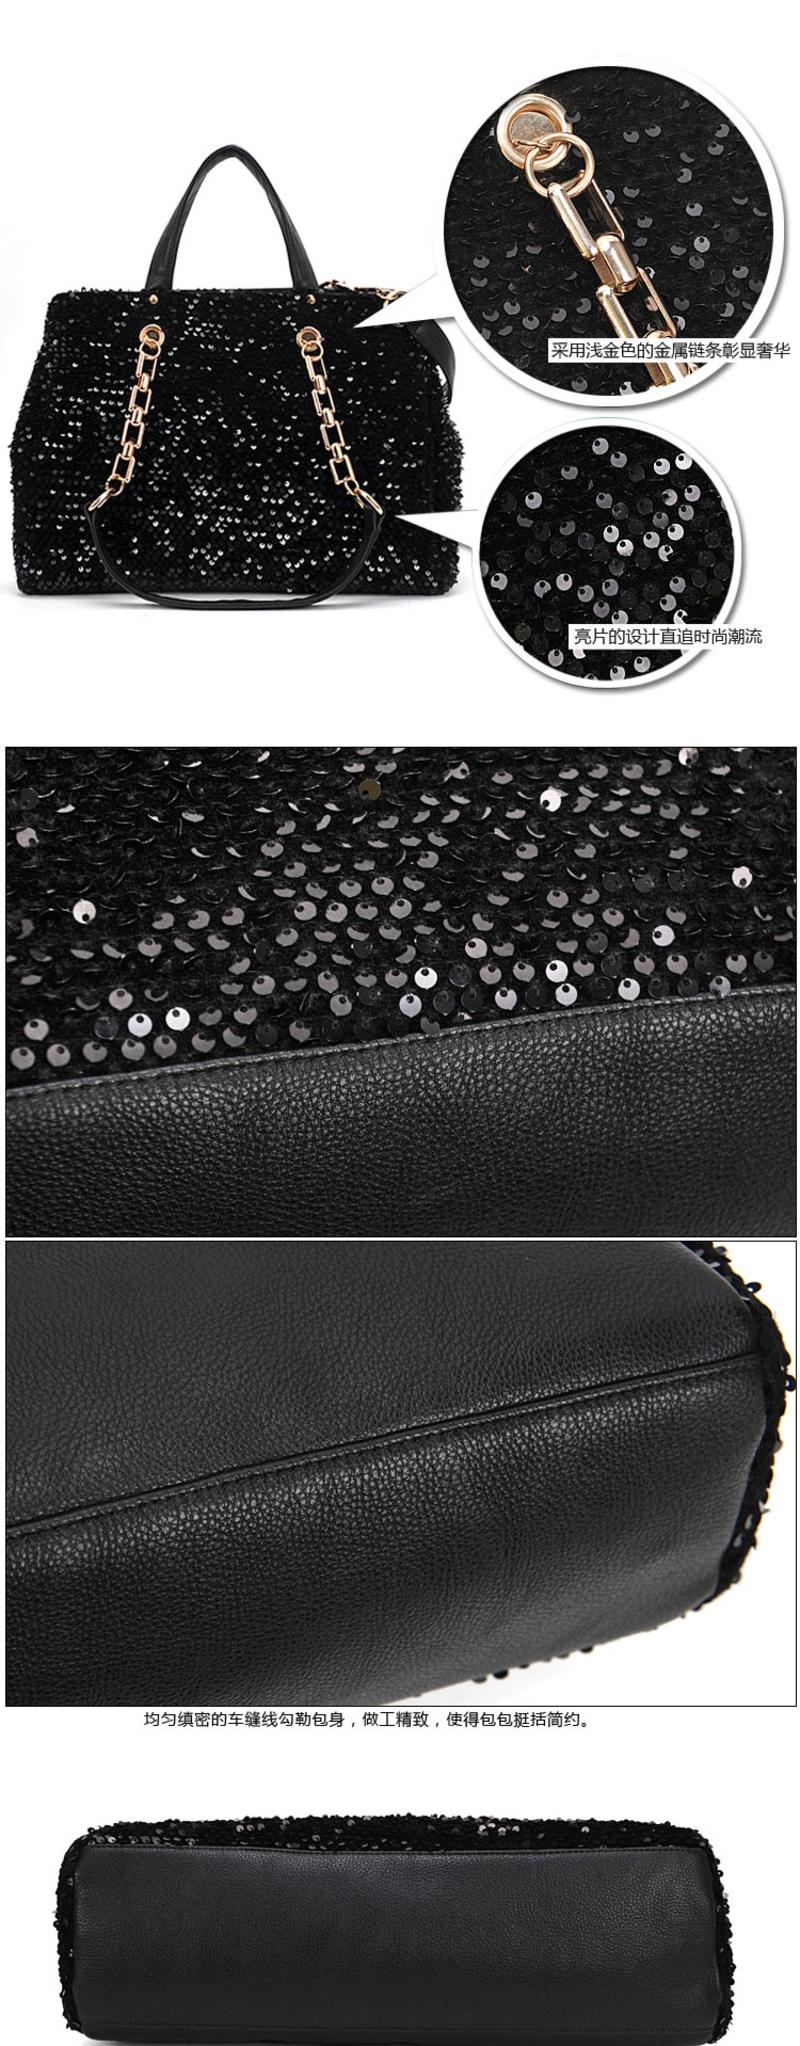 奥狄菲 2012新款亮片包链条包化妆包包邮单肩包手提包女包 A111